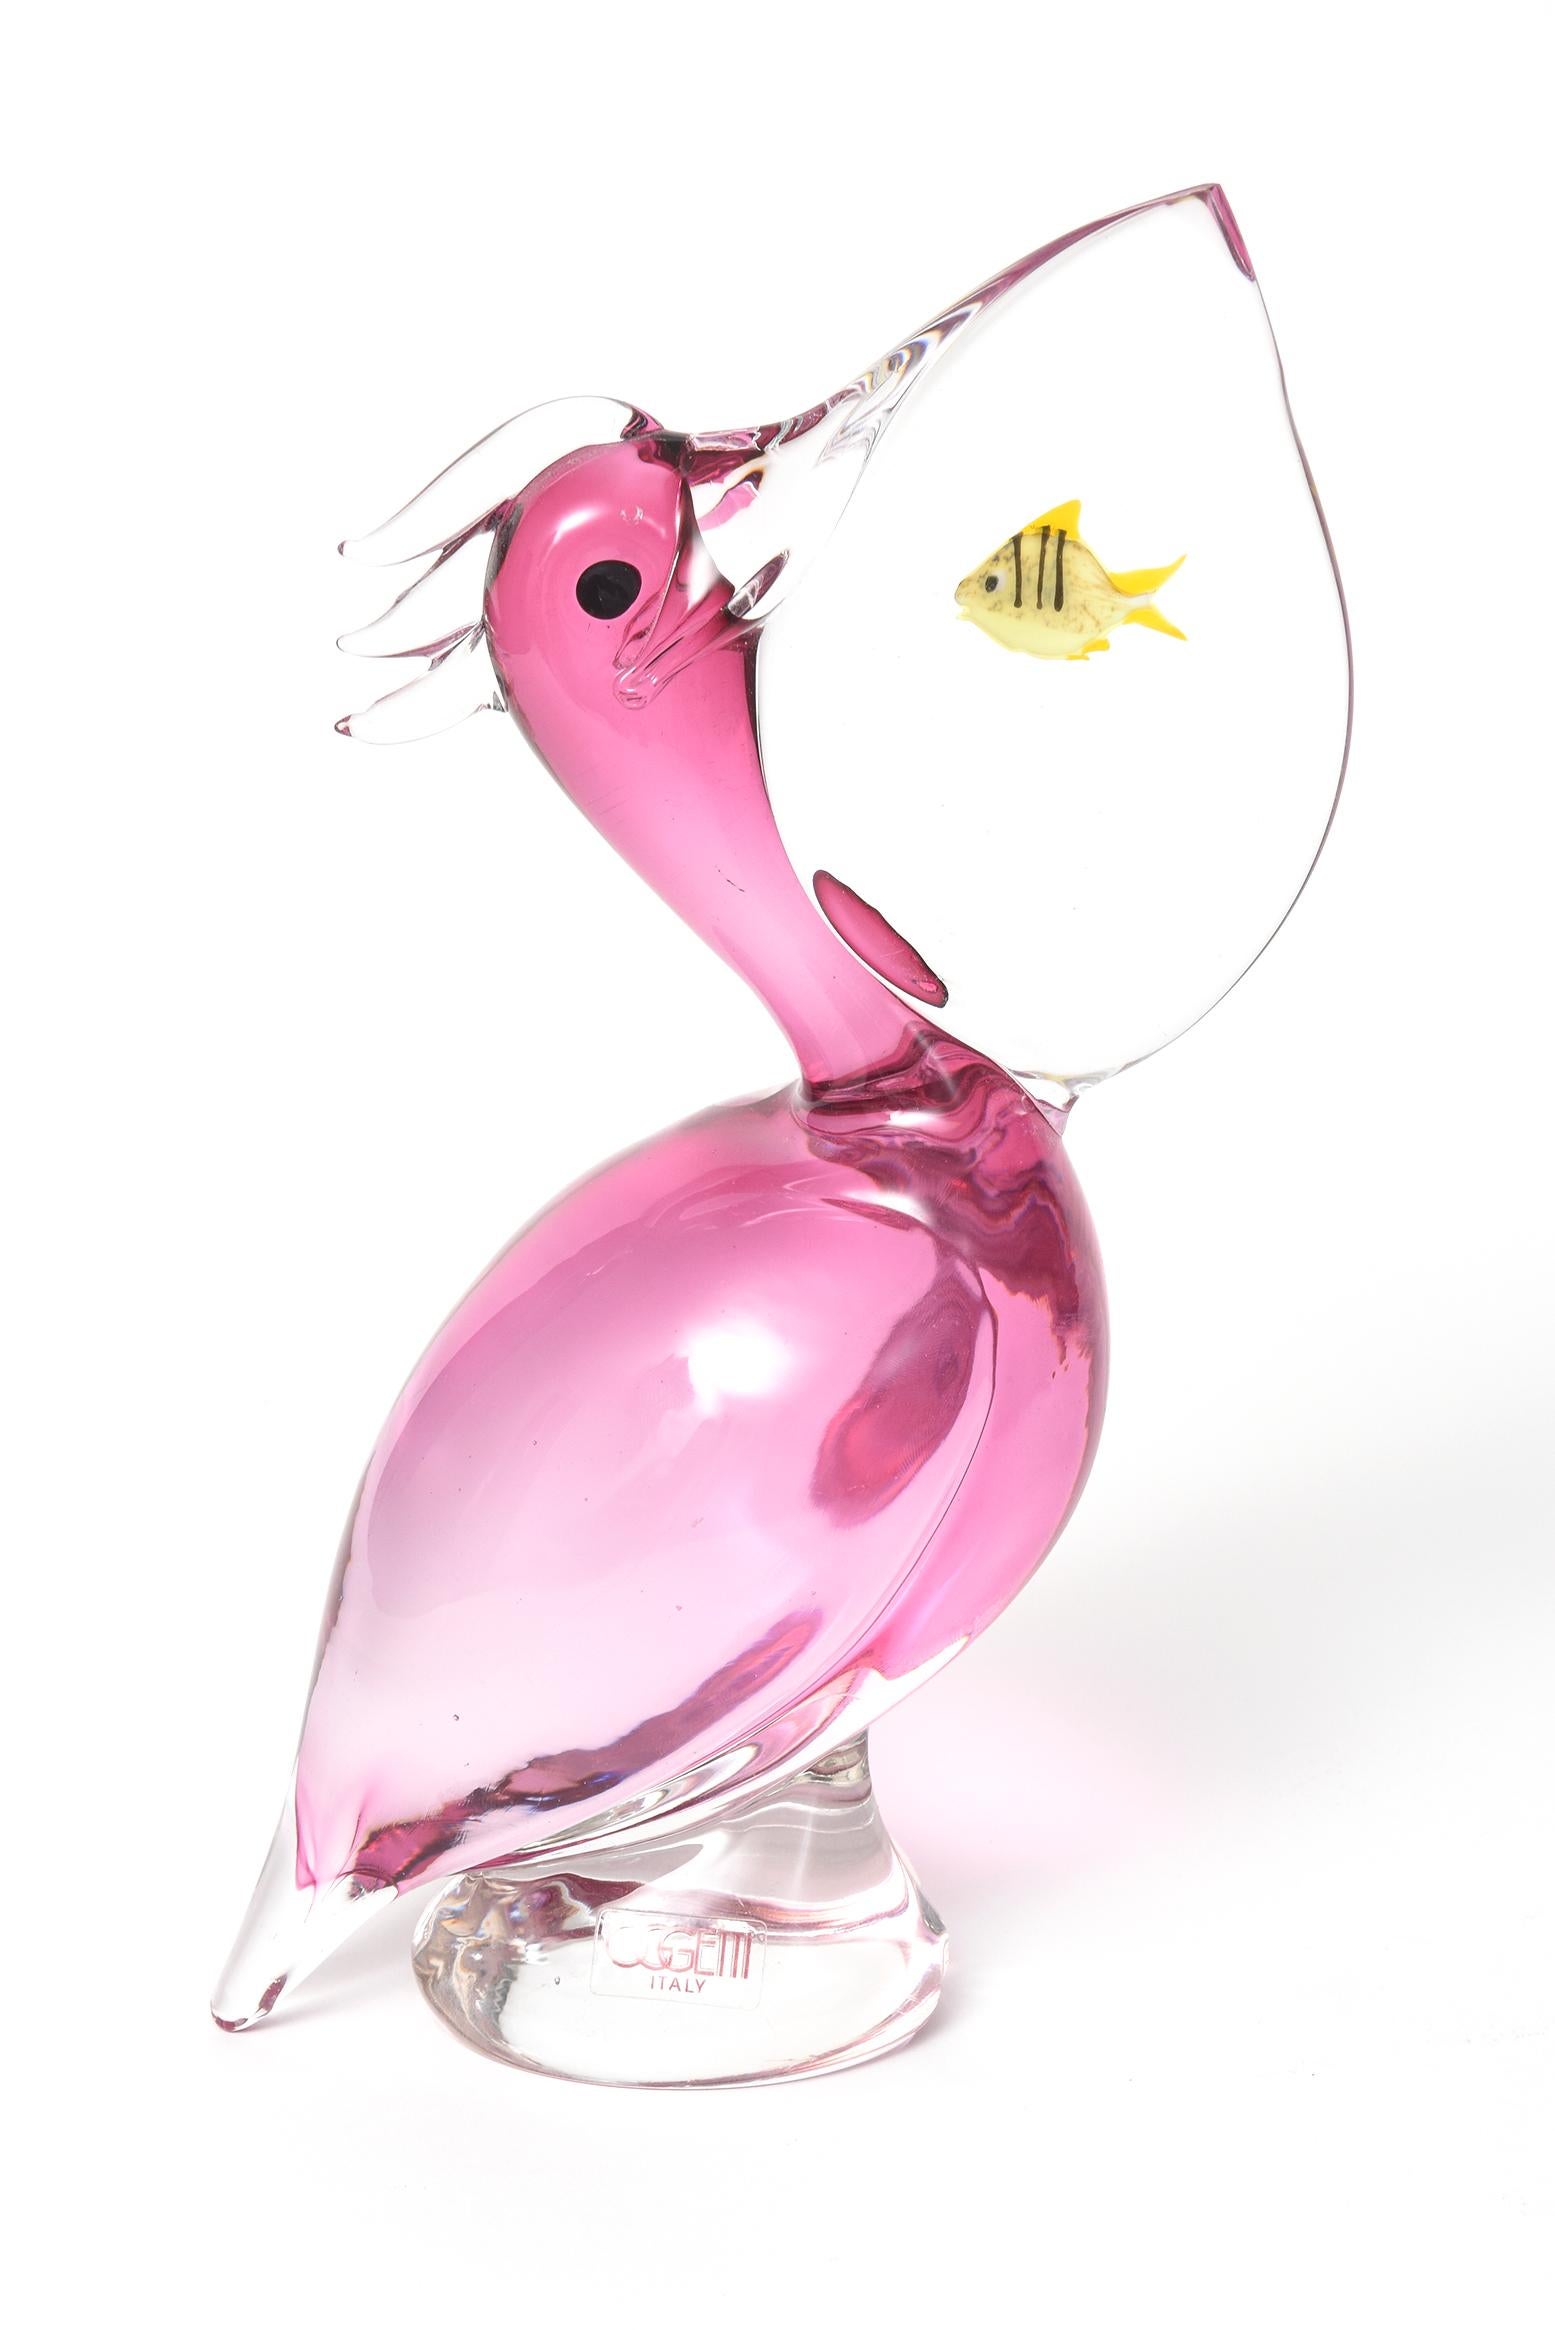 Der Pelikan aus italienischem Muranoglas von Oggetti hat einen rosafarbenen Körper und einen transparenten Schnabel, in dem ein kleiner gelber Fisch steckt. Markiert mit einem Aufkleber Oggetti Italien. Signiert am Boden von Elio Raffaeli

Oggetti